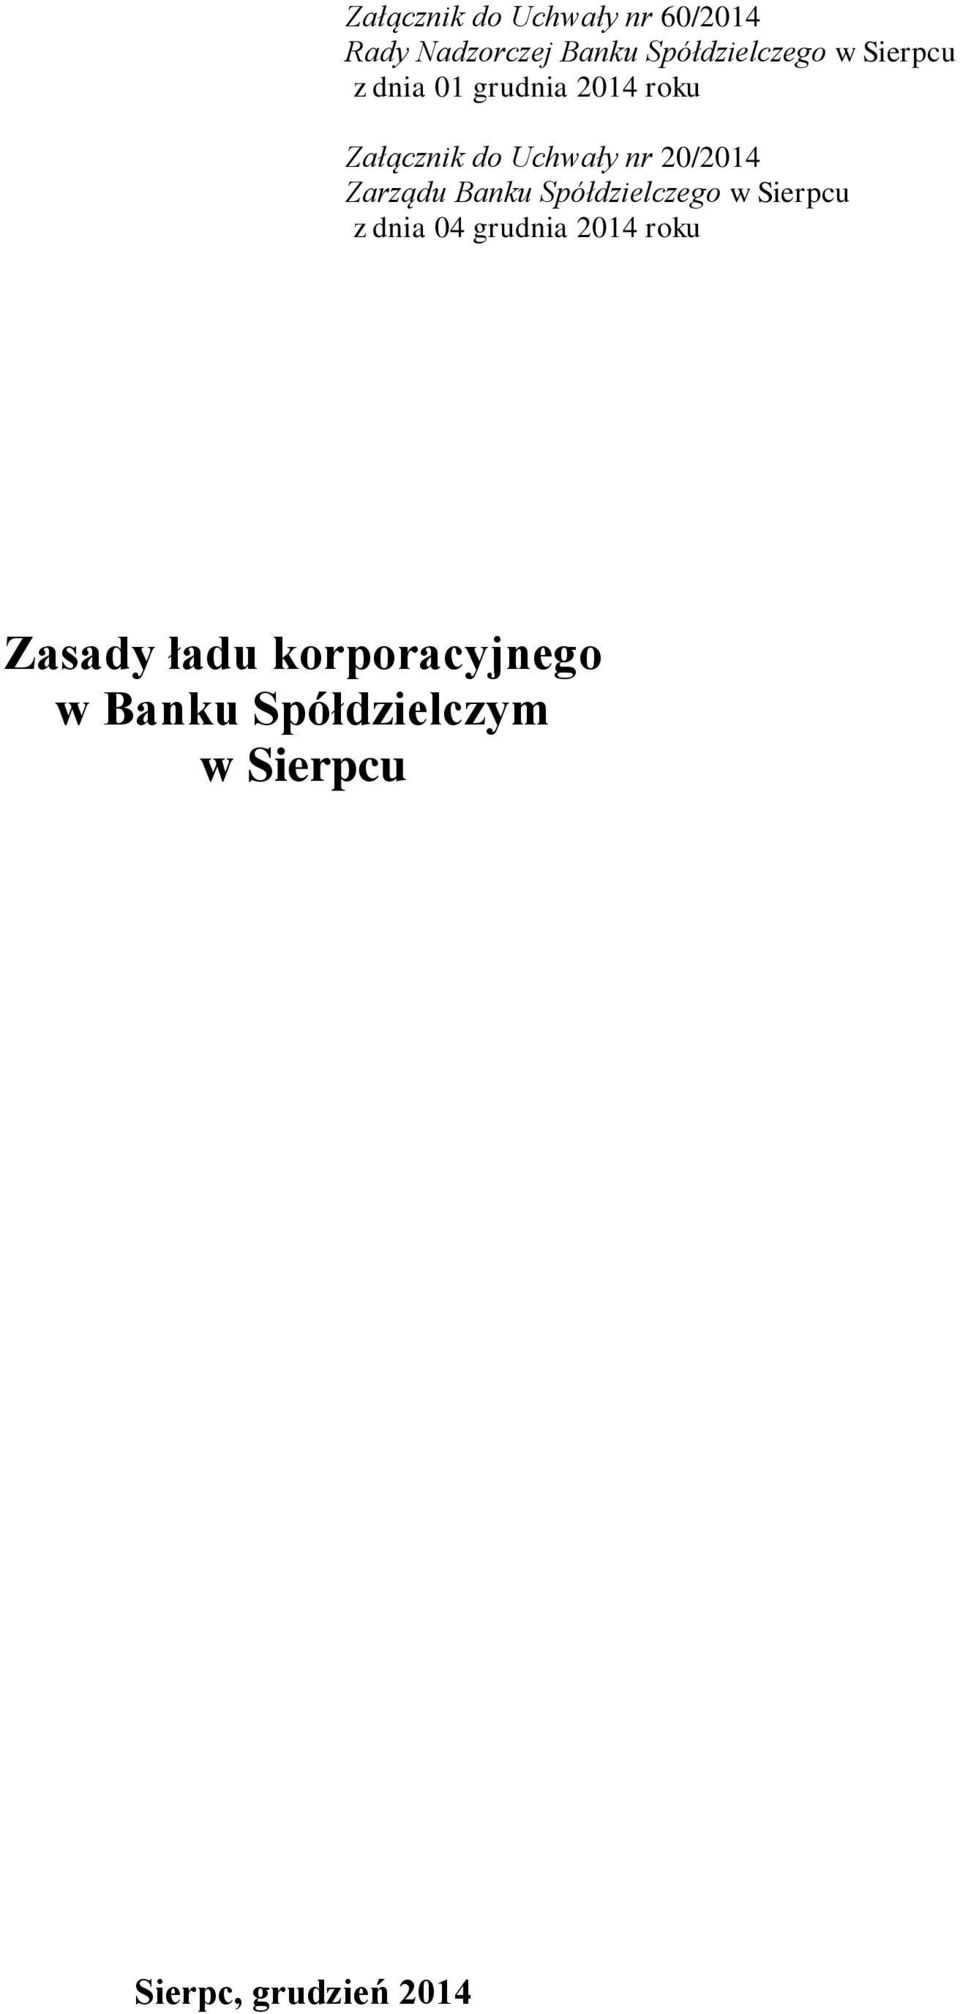 Zarządu Banku Spółdzielczego w Sierpcu z dnia 04 grudnia 2014 roku